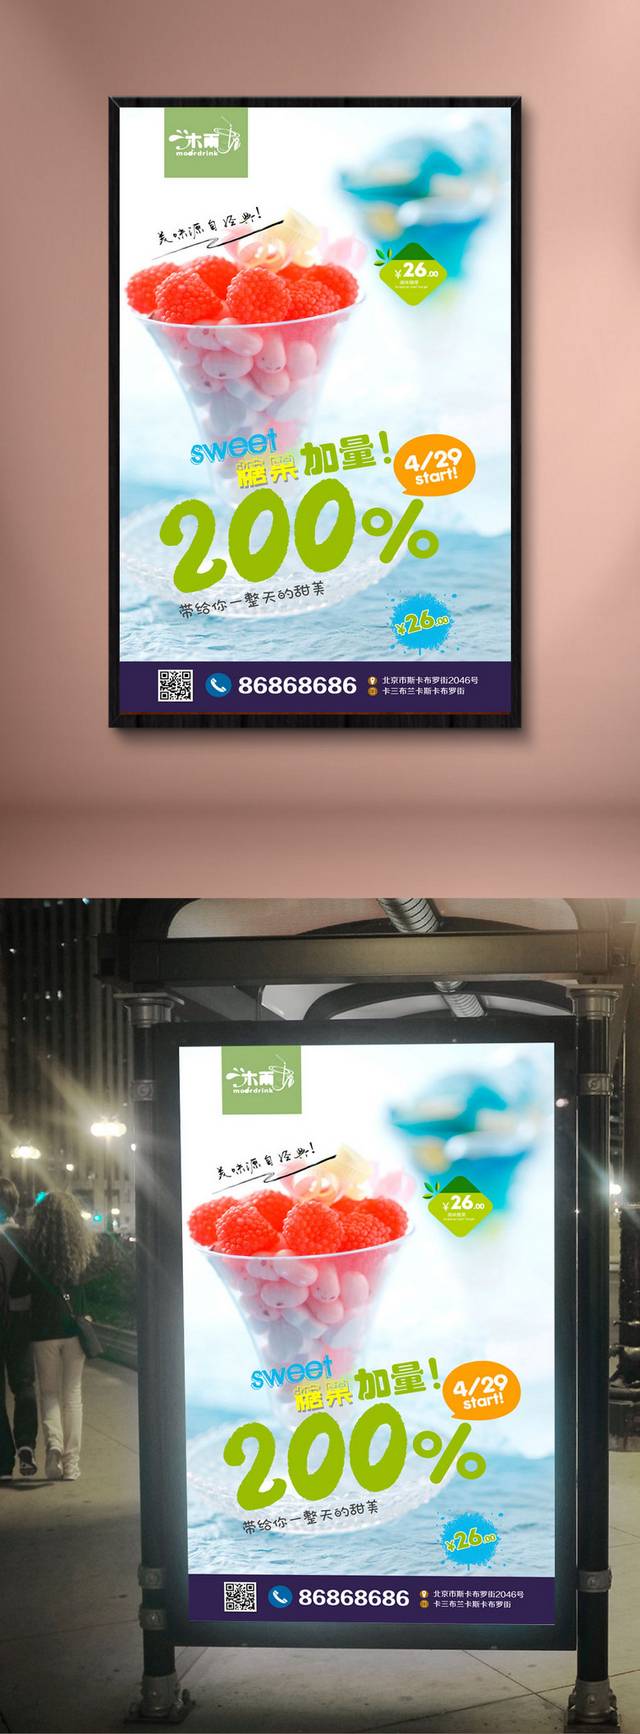 高清糖果零食宣传海报设计模板